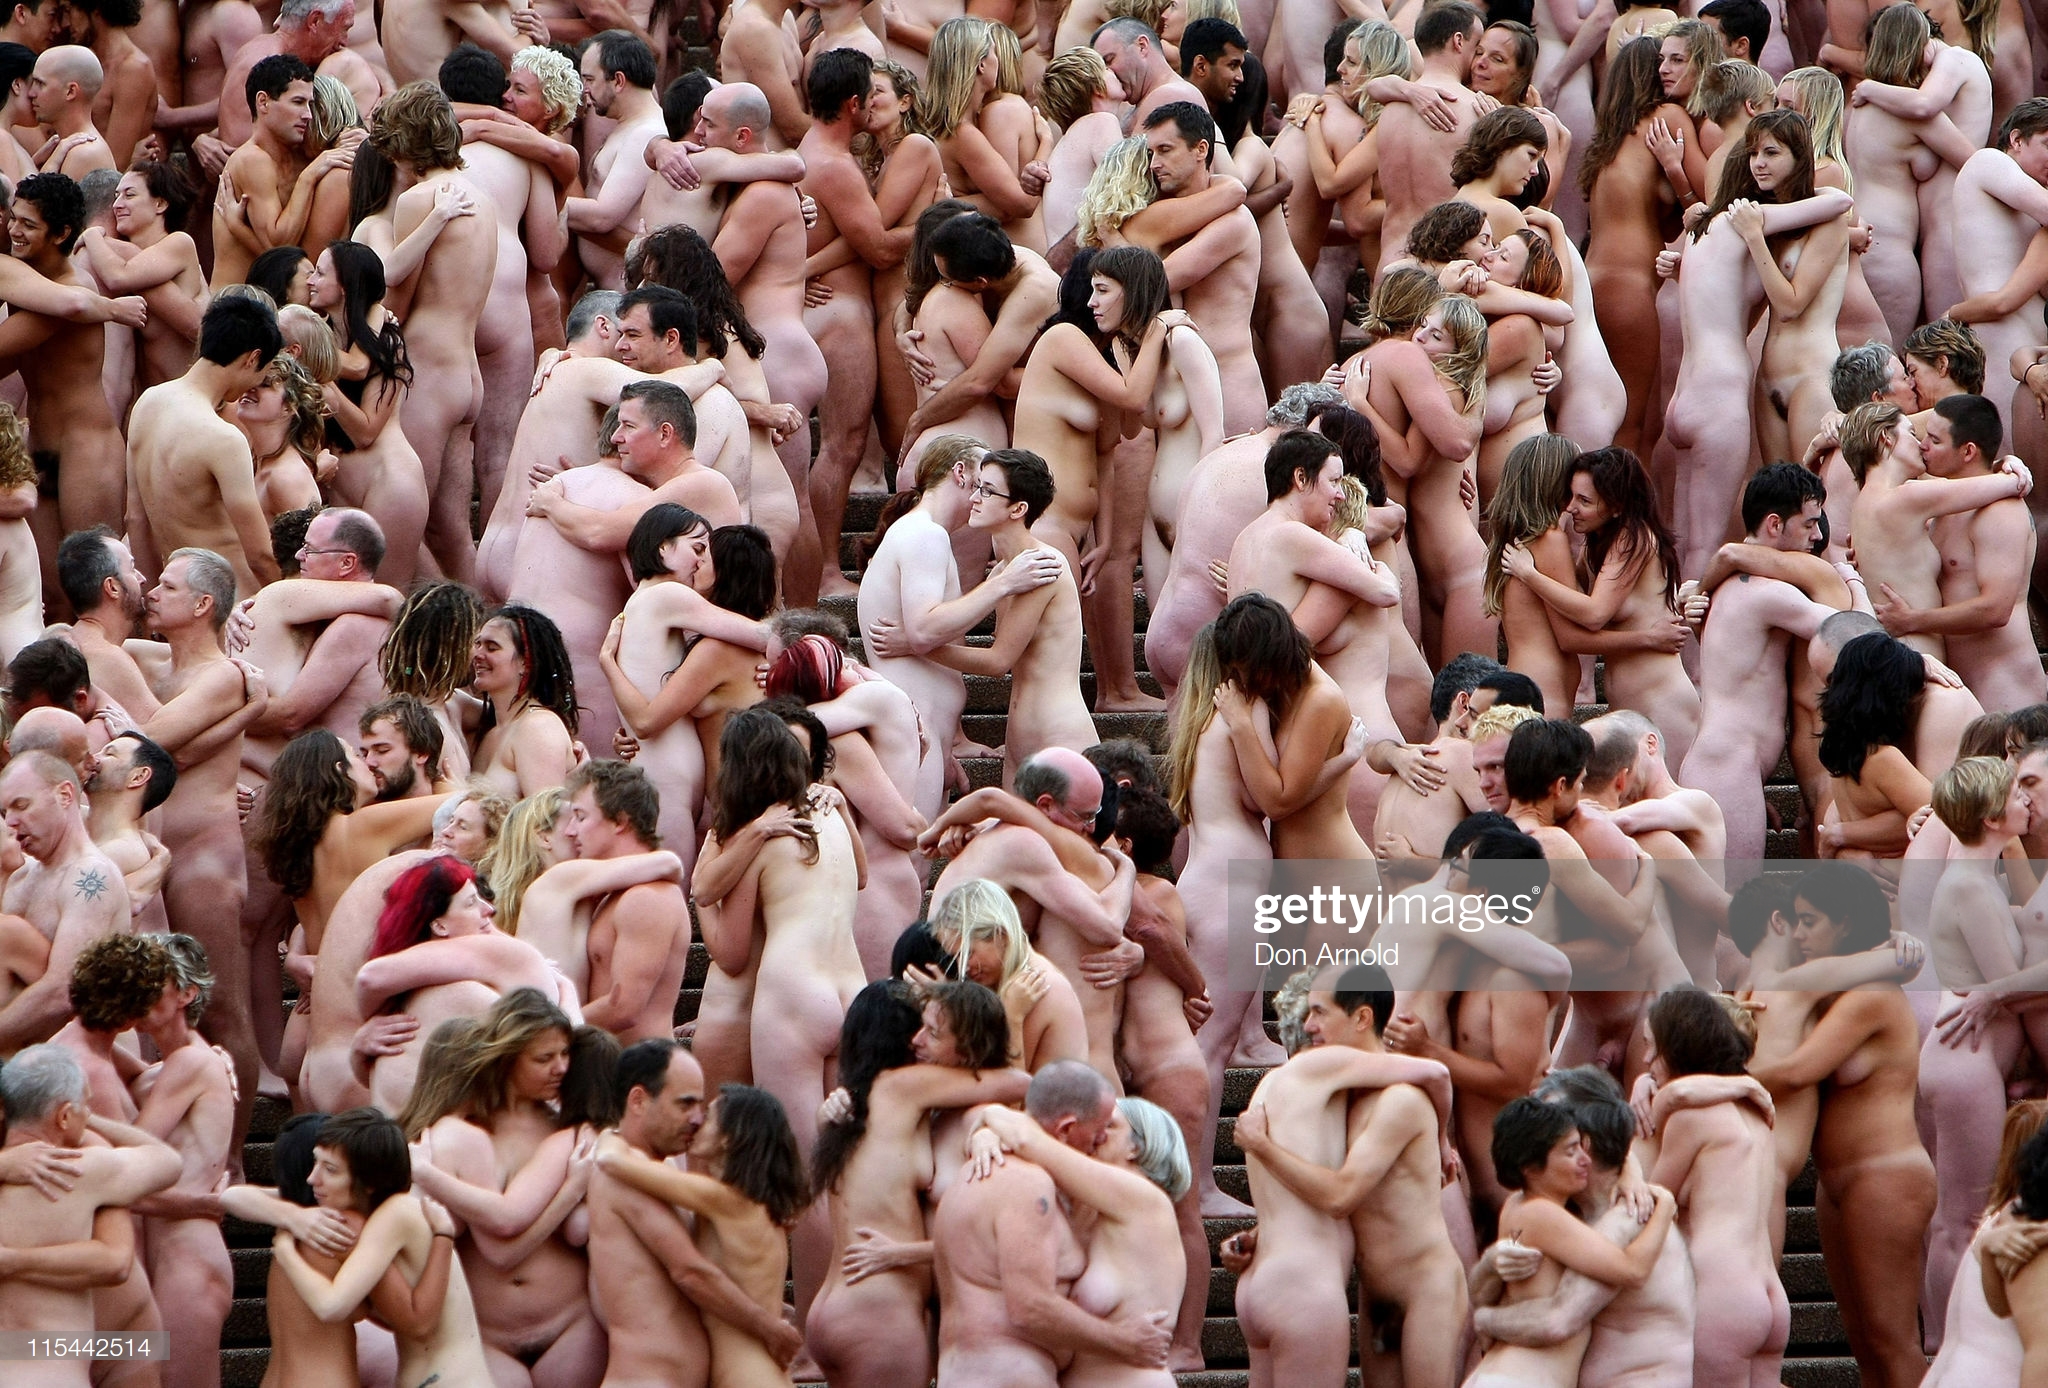 соц сеть голых людей фото 98